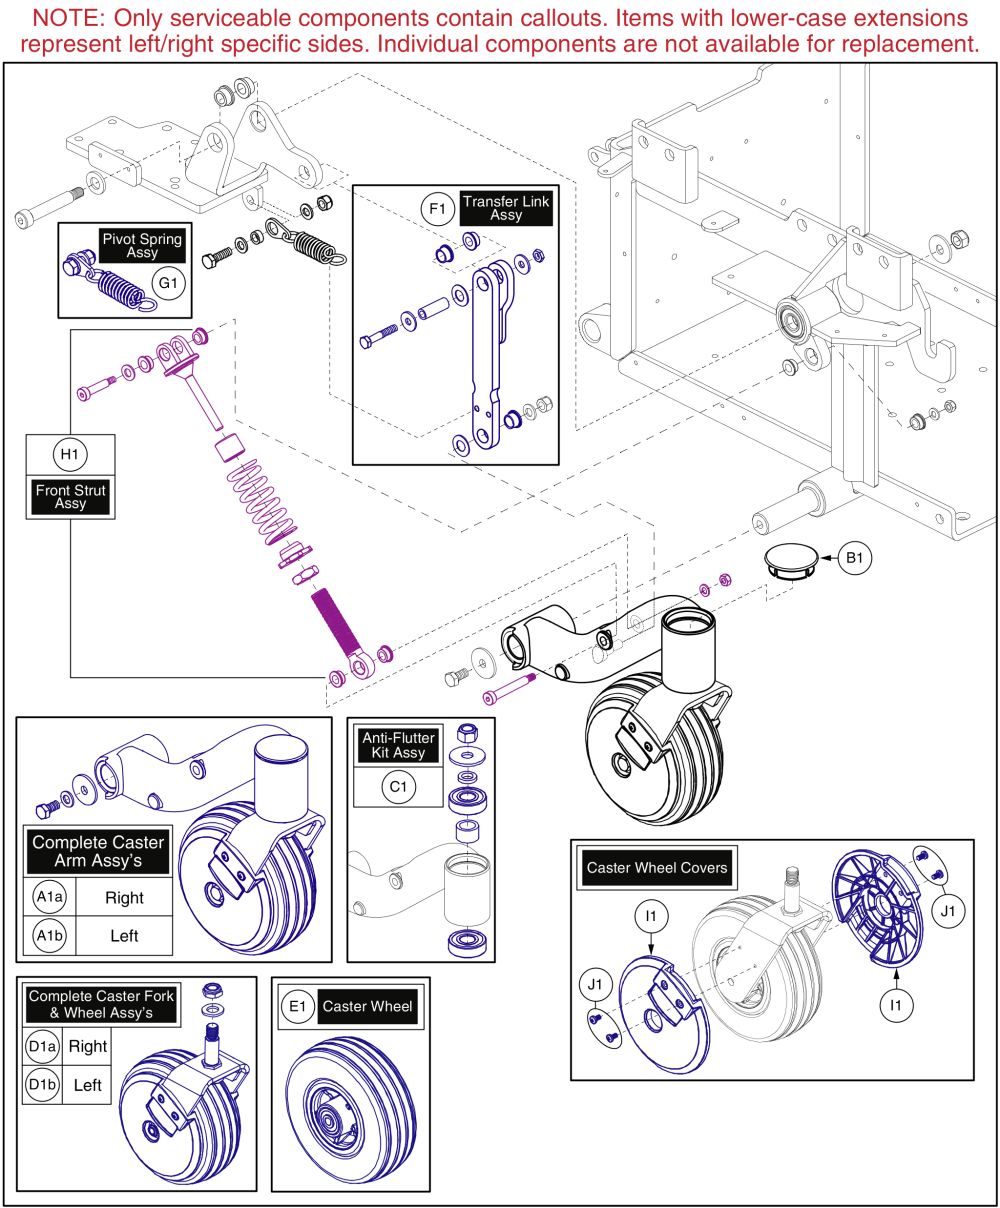 Front Caster & Front Suspension, Edge Z / Q6 Ultra parts diagram